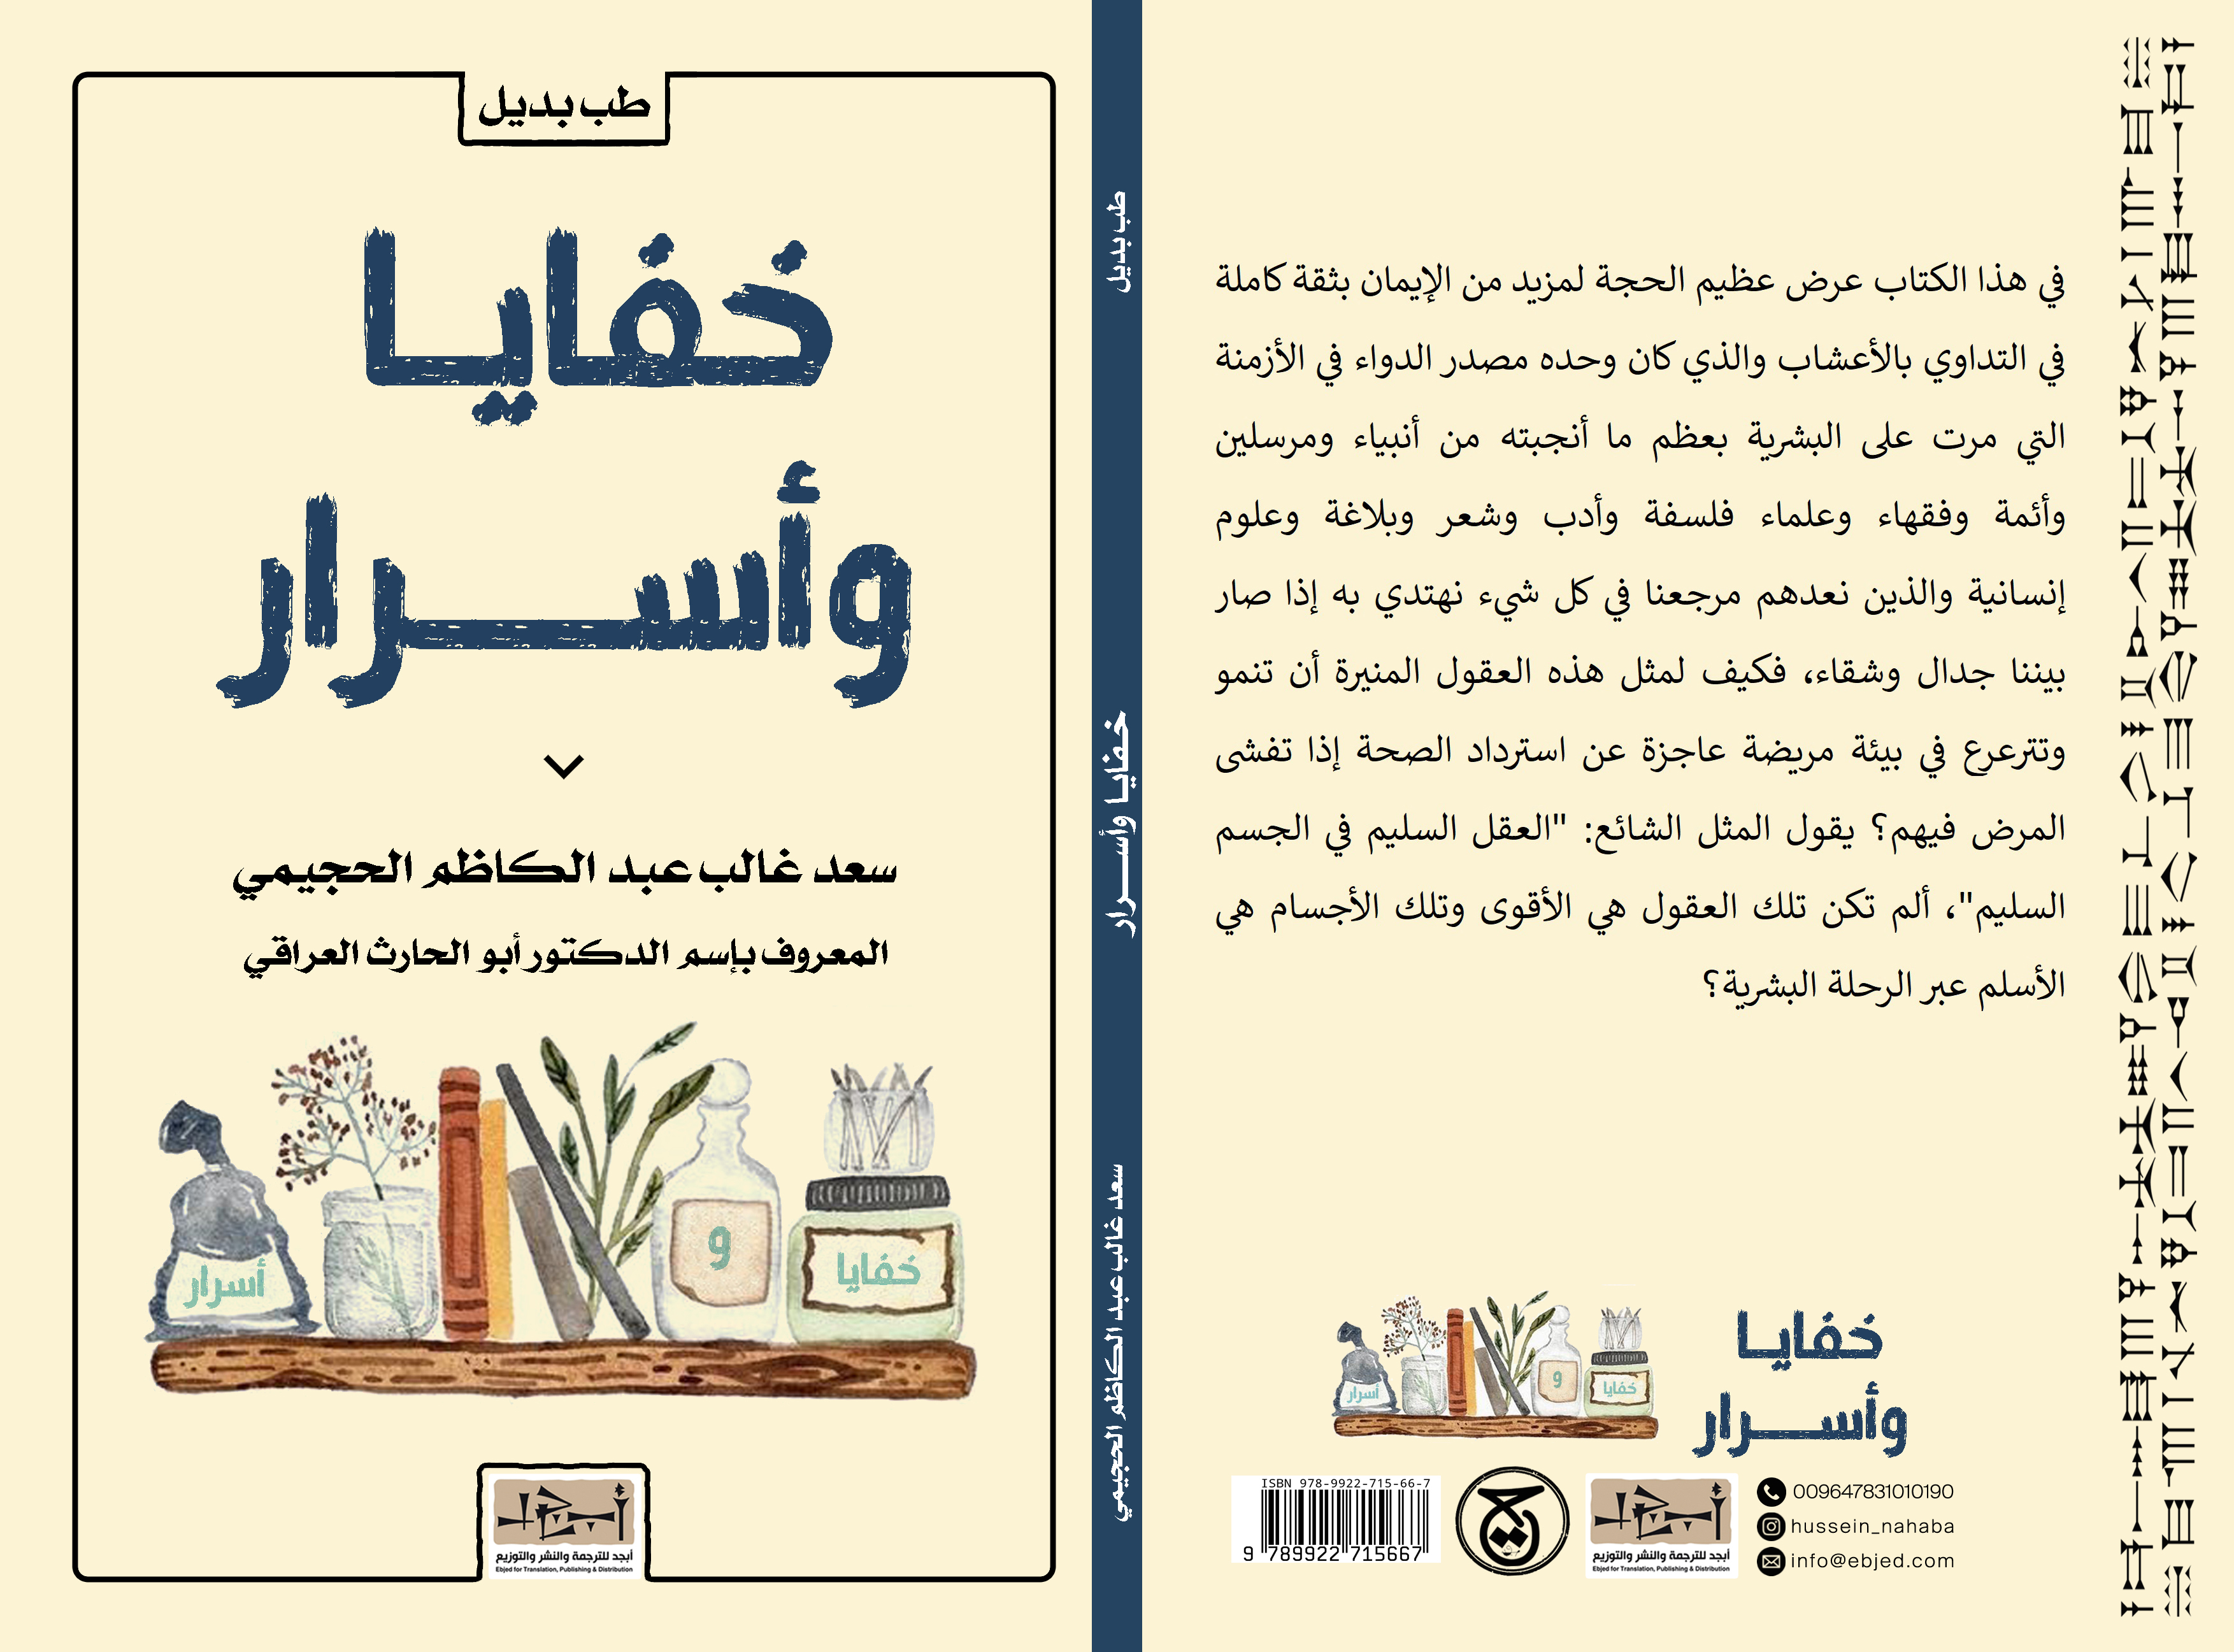 عنوان الكتاب: خفايا وأسرار المؤلف: سعد غالب عبد الكاظم الحجيمي (المعروف بأسم الدكتور ابو حارث العراقي) التصنيف: طب بديل